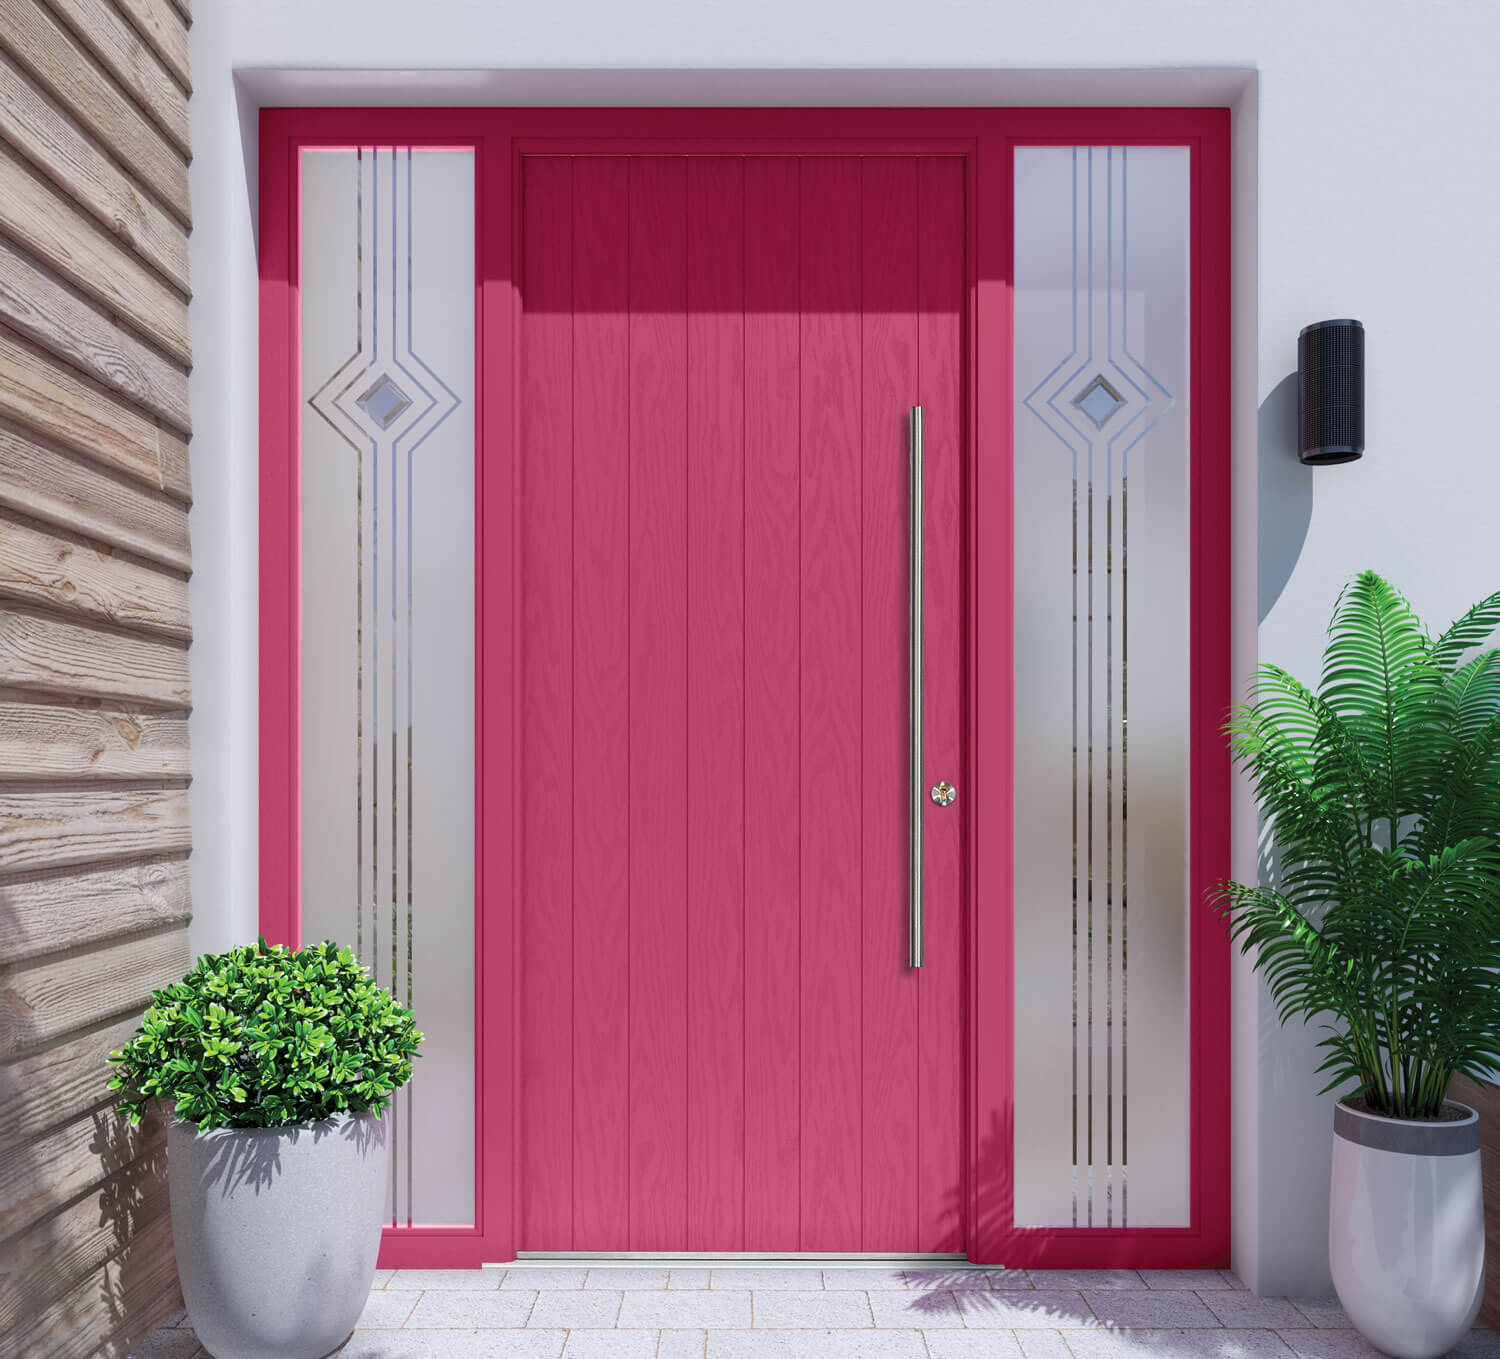 design your composite front door